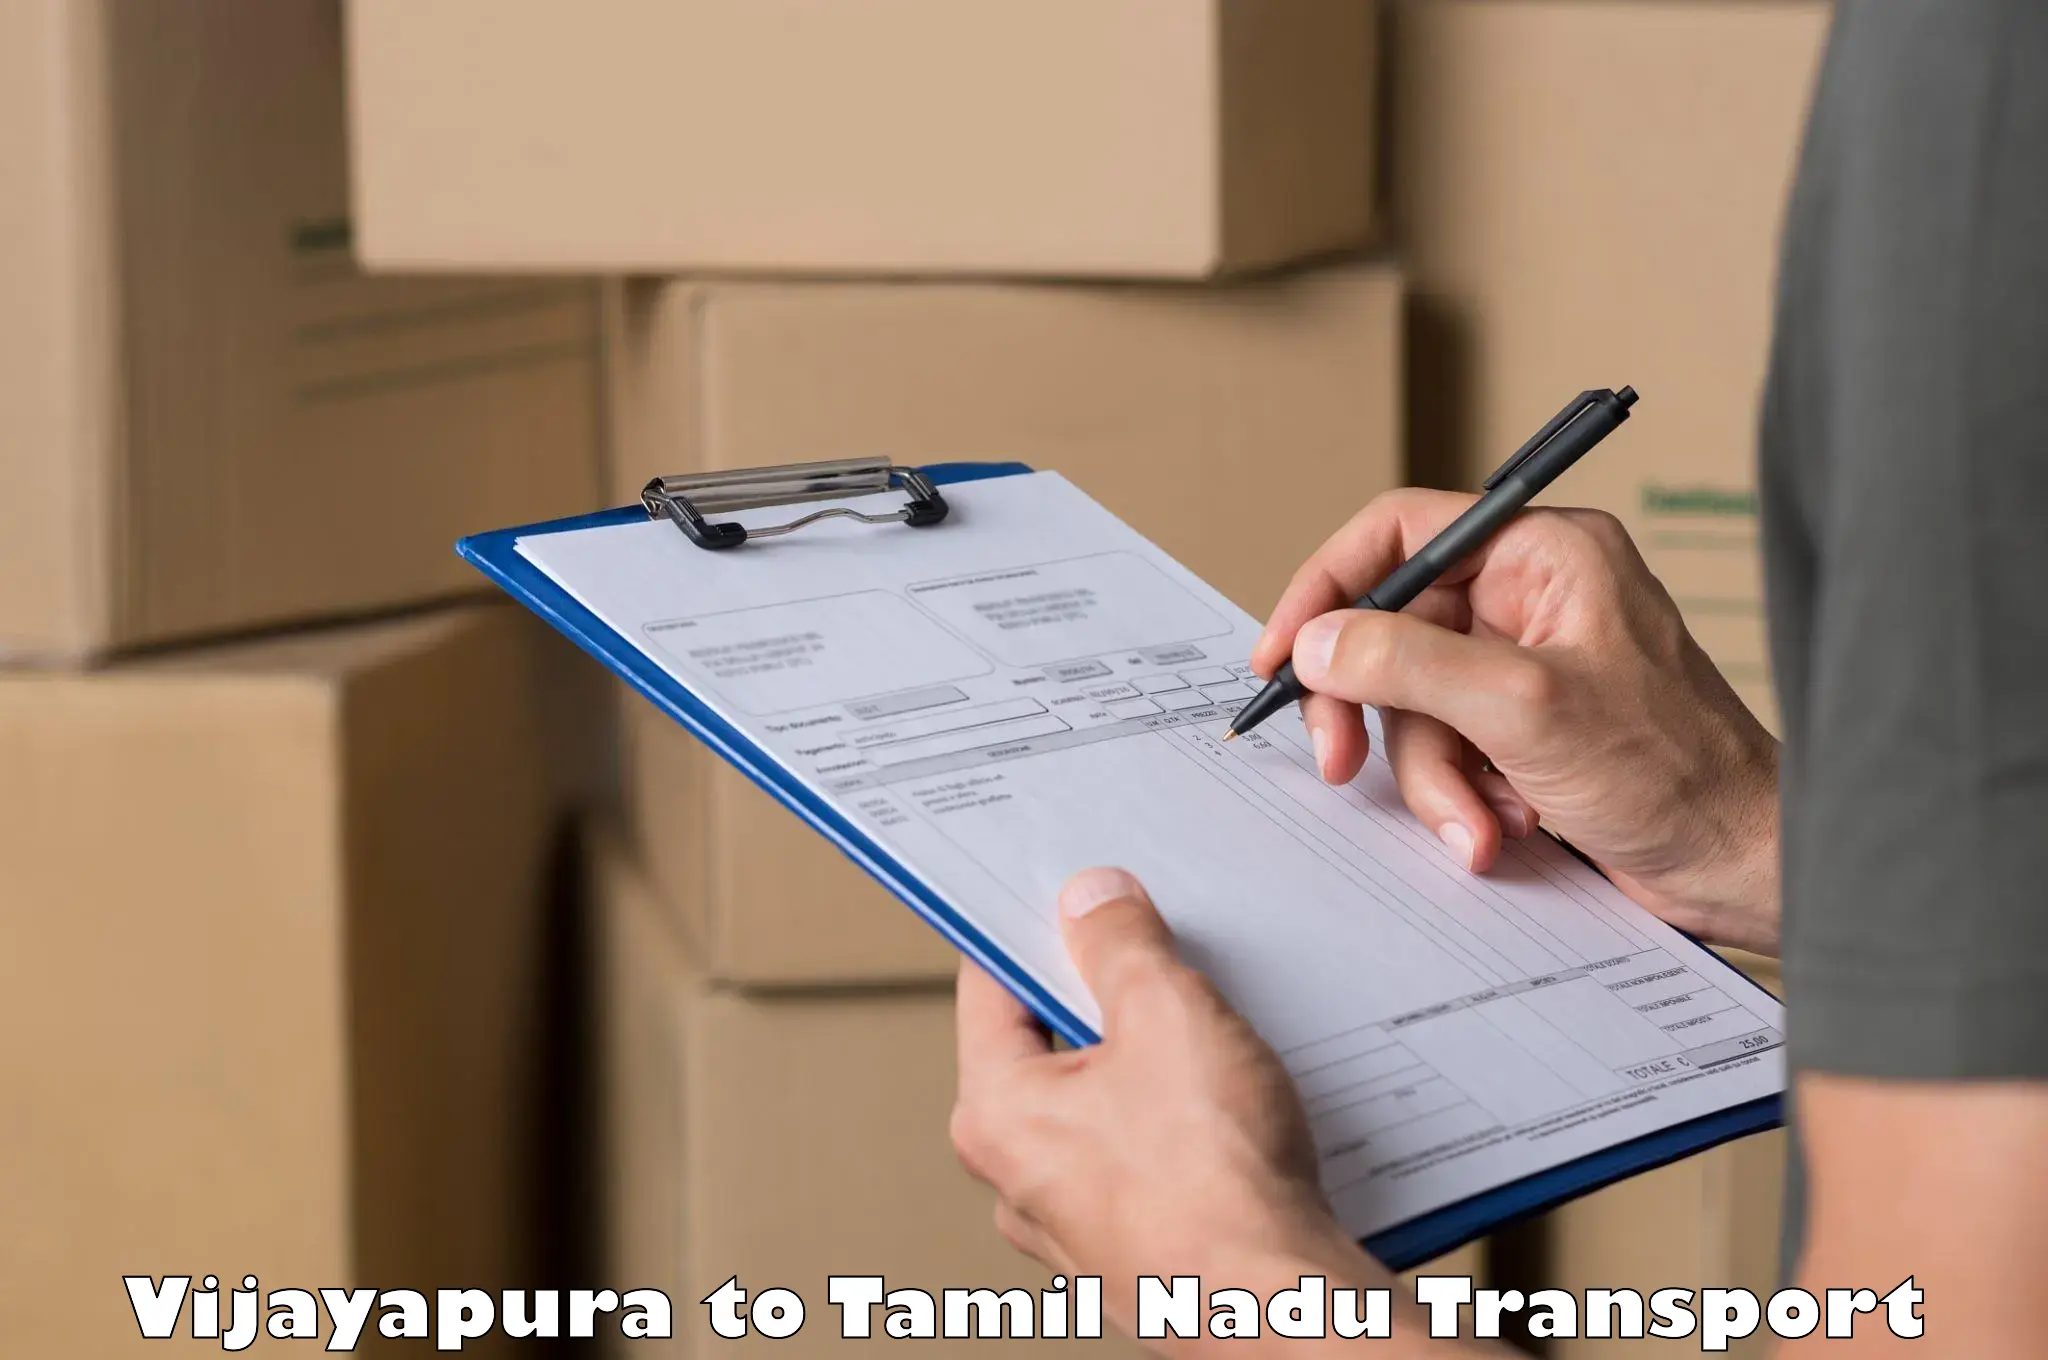 Container transport service Vijayapura to Tamil Nadu